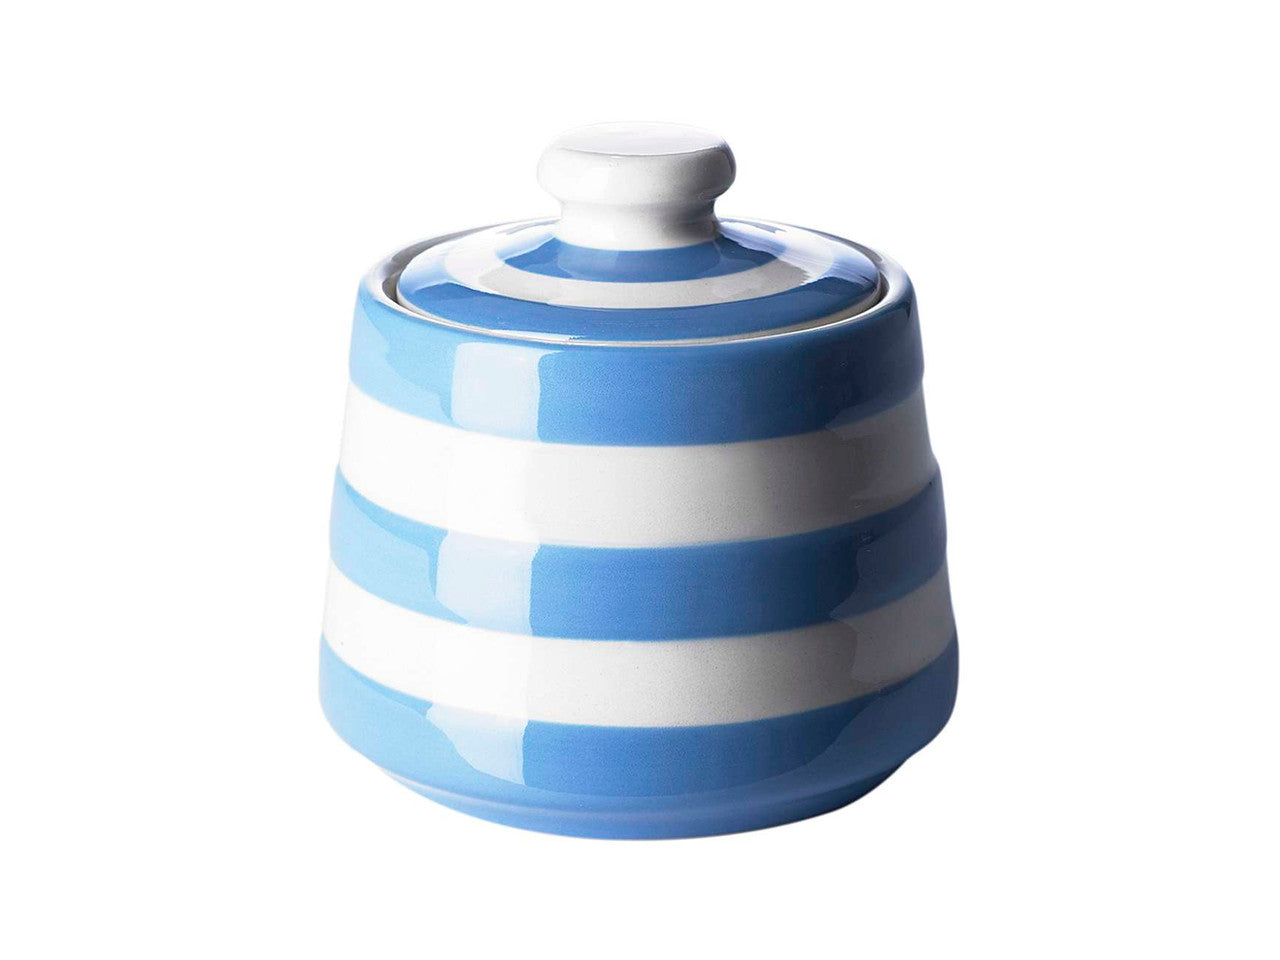 Cornishware Striped covered sugar Pot - blue